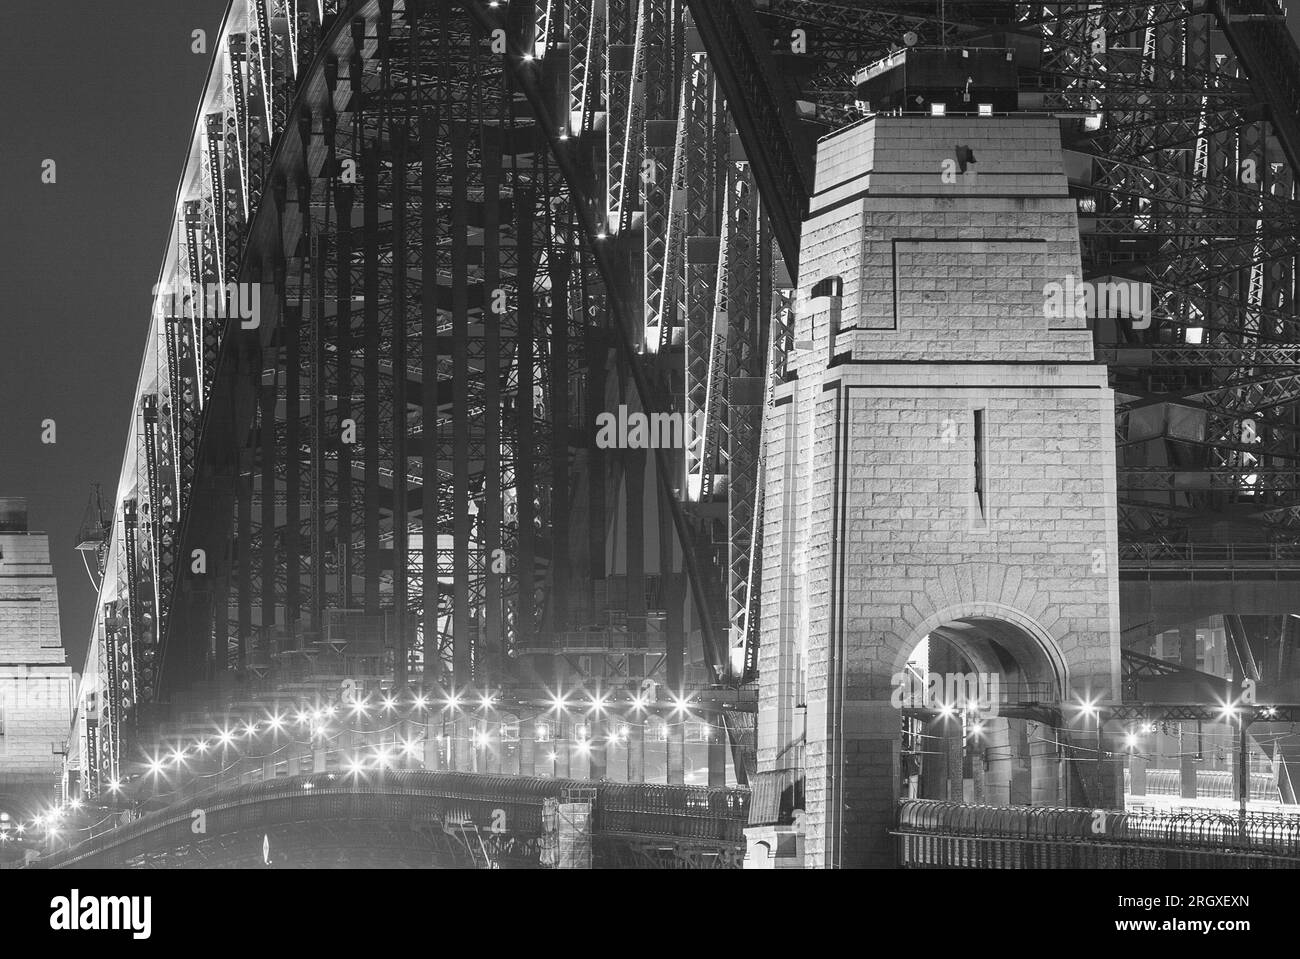 Sydney Harbour Bridge in Australia by night. Stock Photo